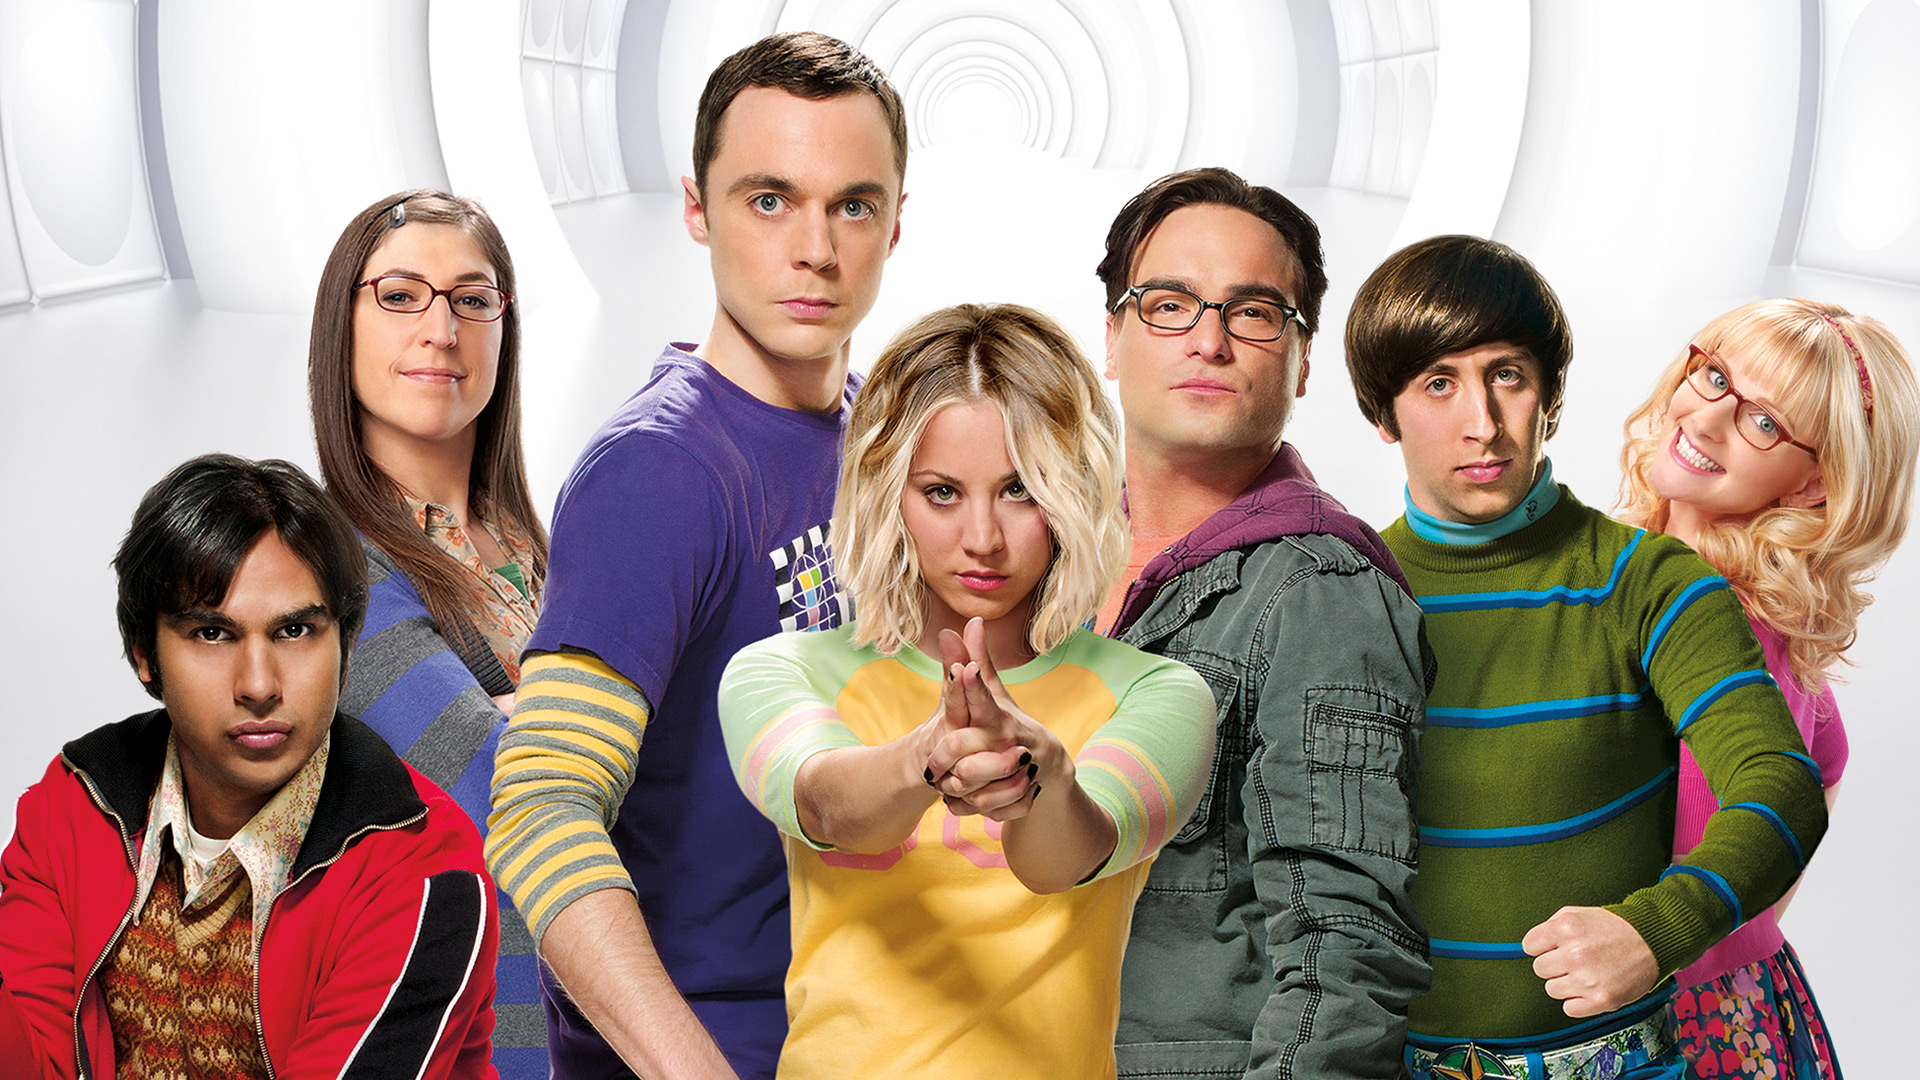 The Big Bang Theory screenshot.